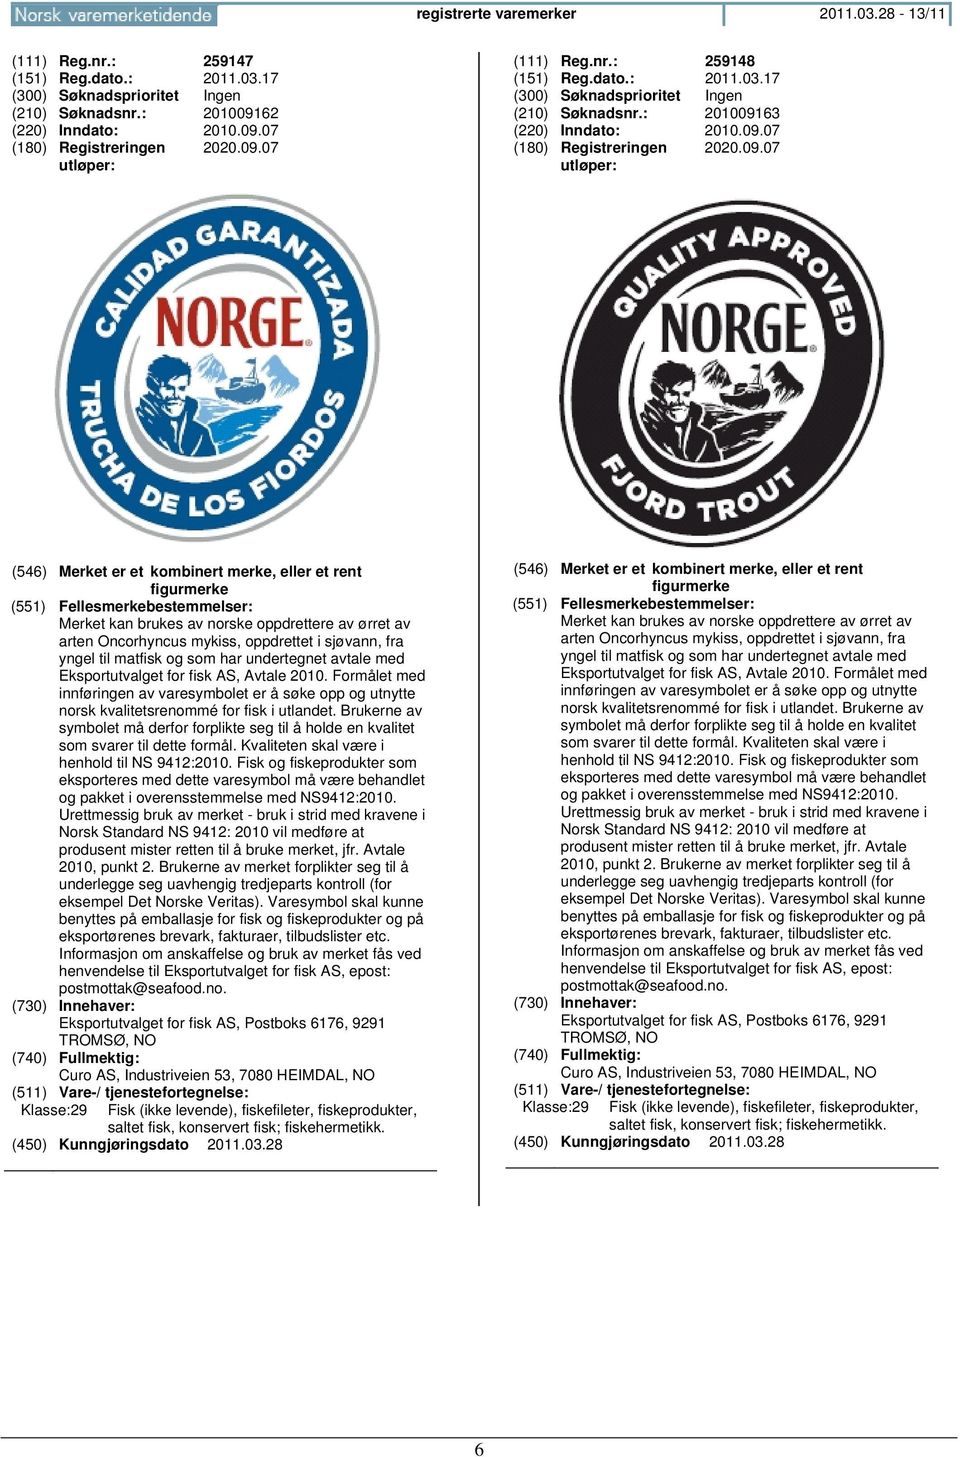 med Eksportutvalget for fisk AS, Avtale 2010. Formålet med innføringen av varesymbolet er å søke opp og utnytte norsk kvalitetsrenommé for fisk i utlandet.